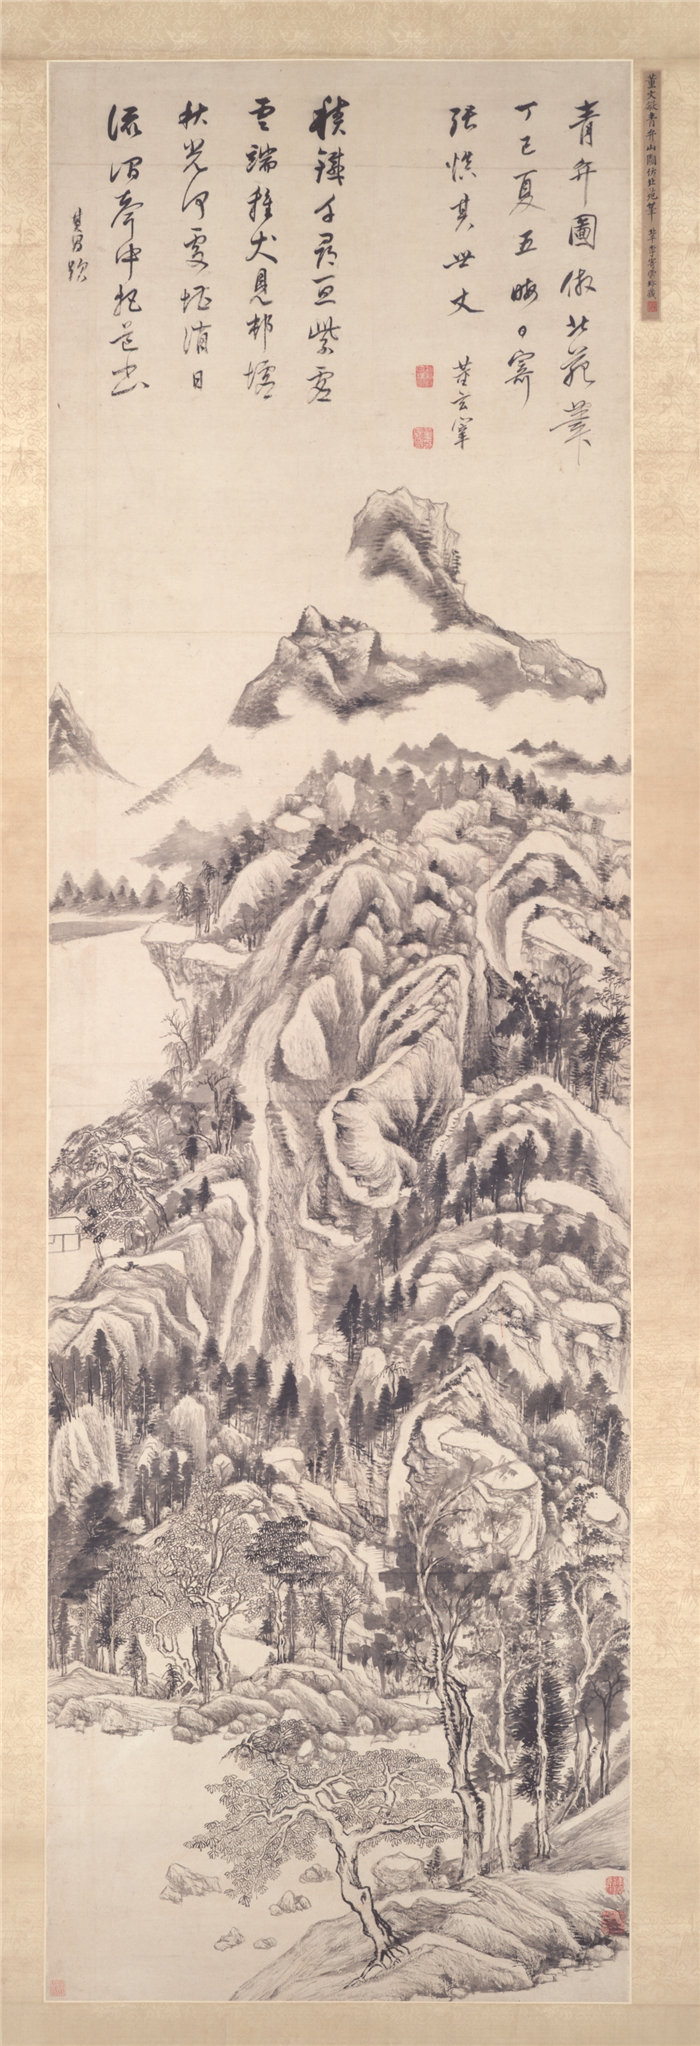 中国明朝董其昌-《青弁图》1617年作品